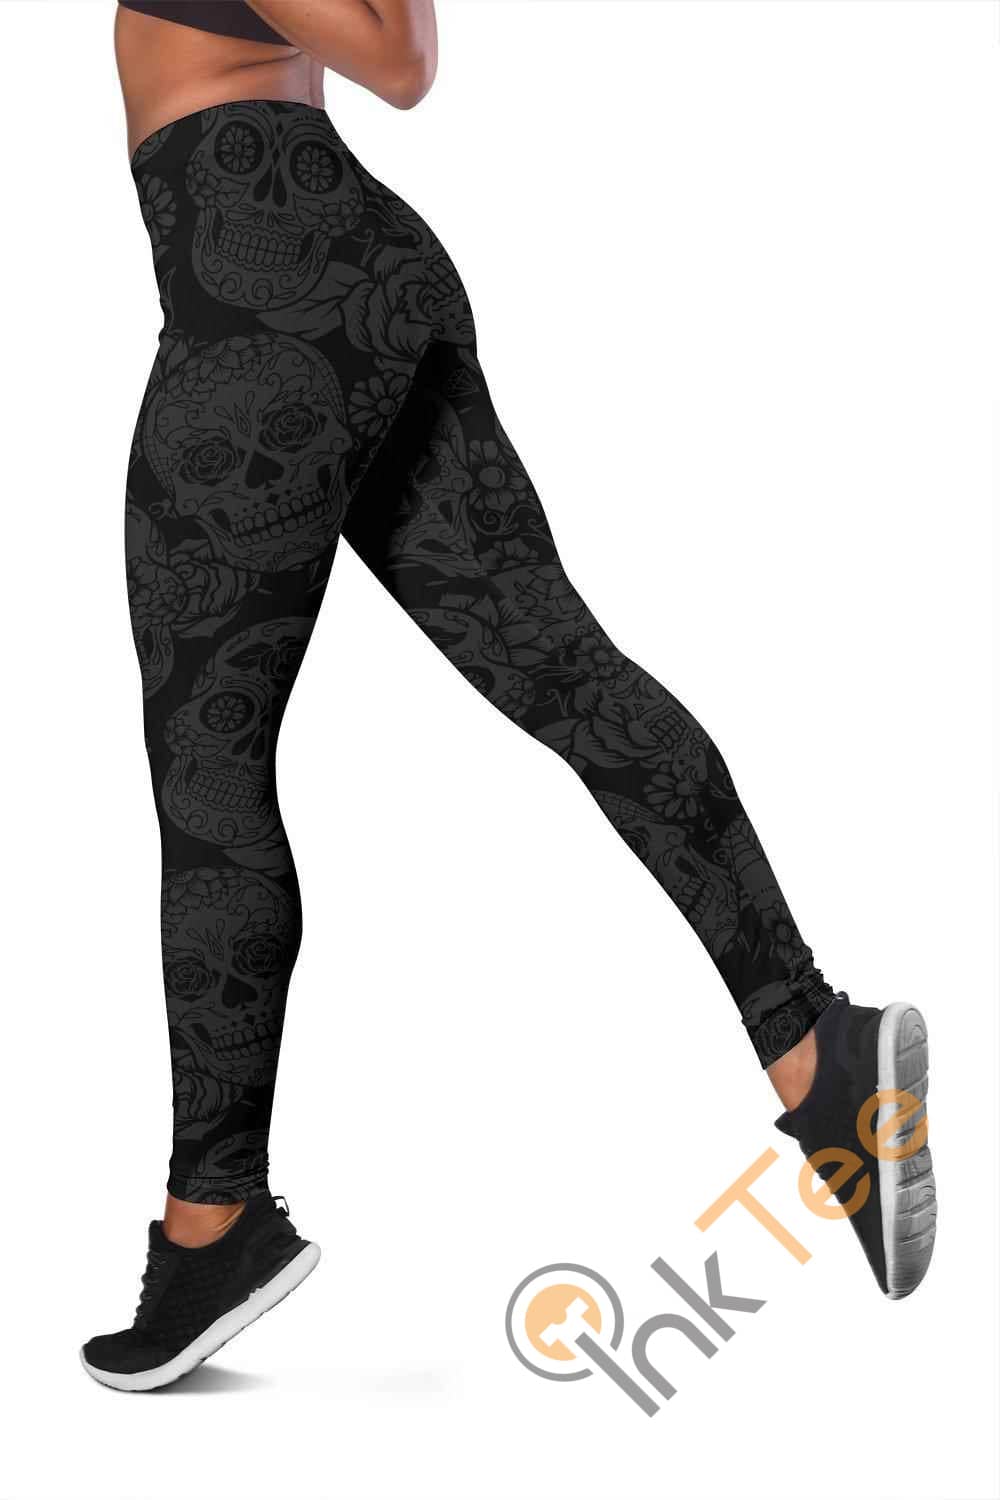 Inktee Store - Dark Skull 3D All Over Print For Yoga Fitness Women'S Leggings Image